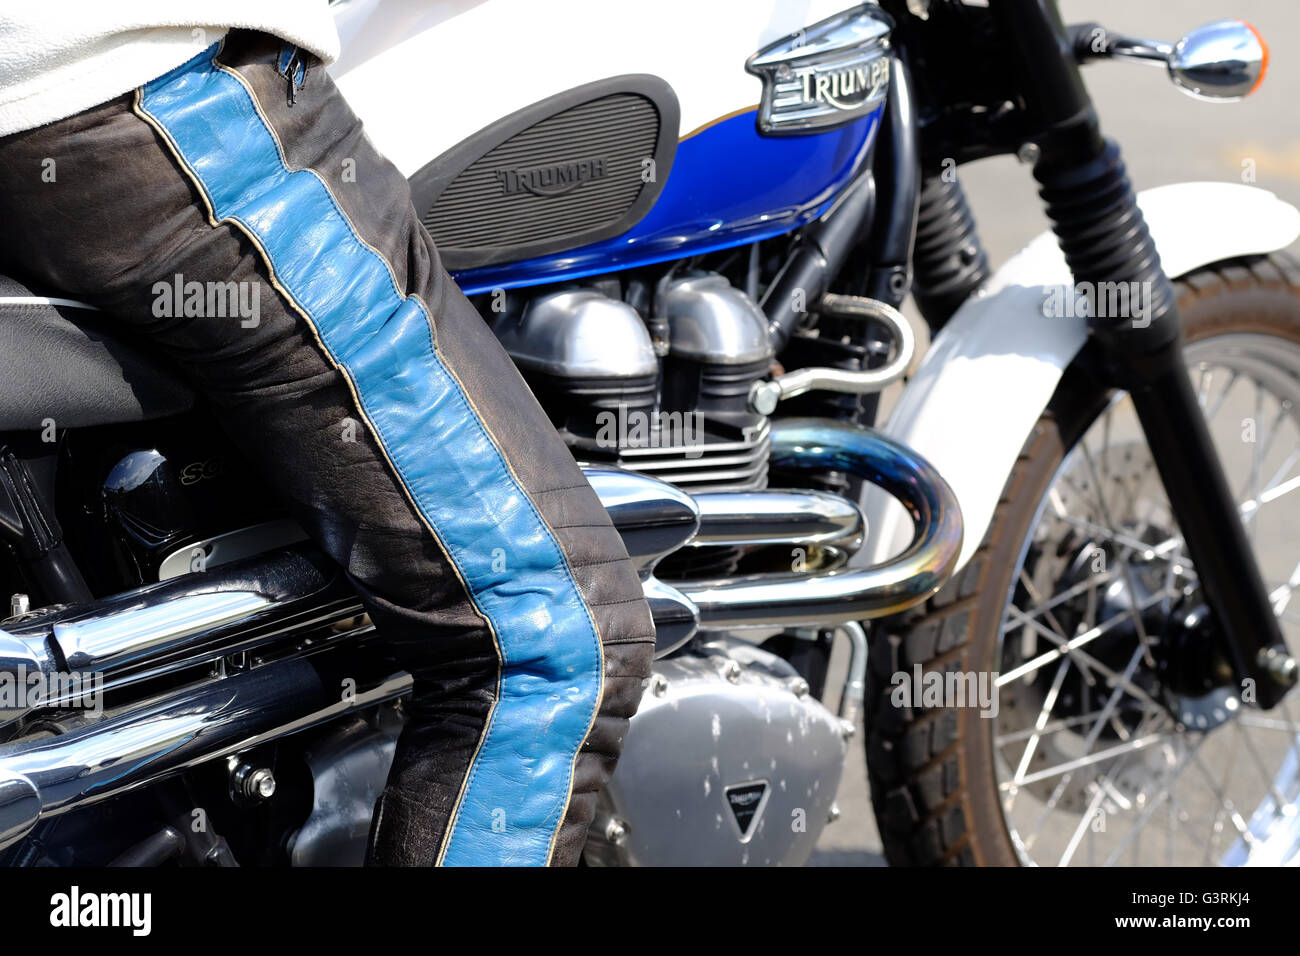 Un motard biker avec un pantalon en cuir sur une moto Triumph Scramble 900 Banque D'Images